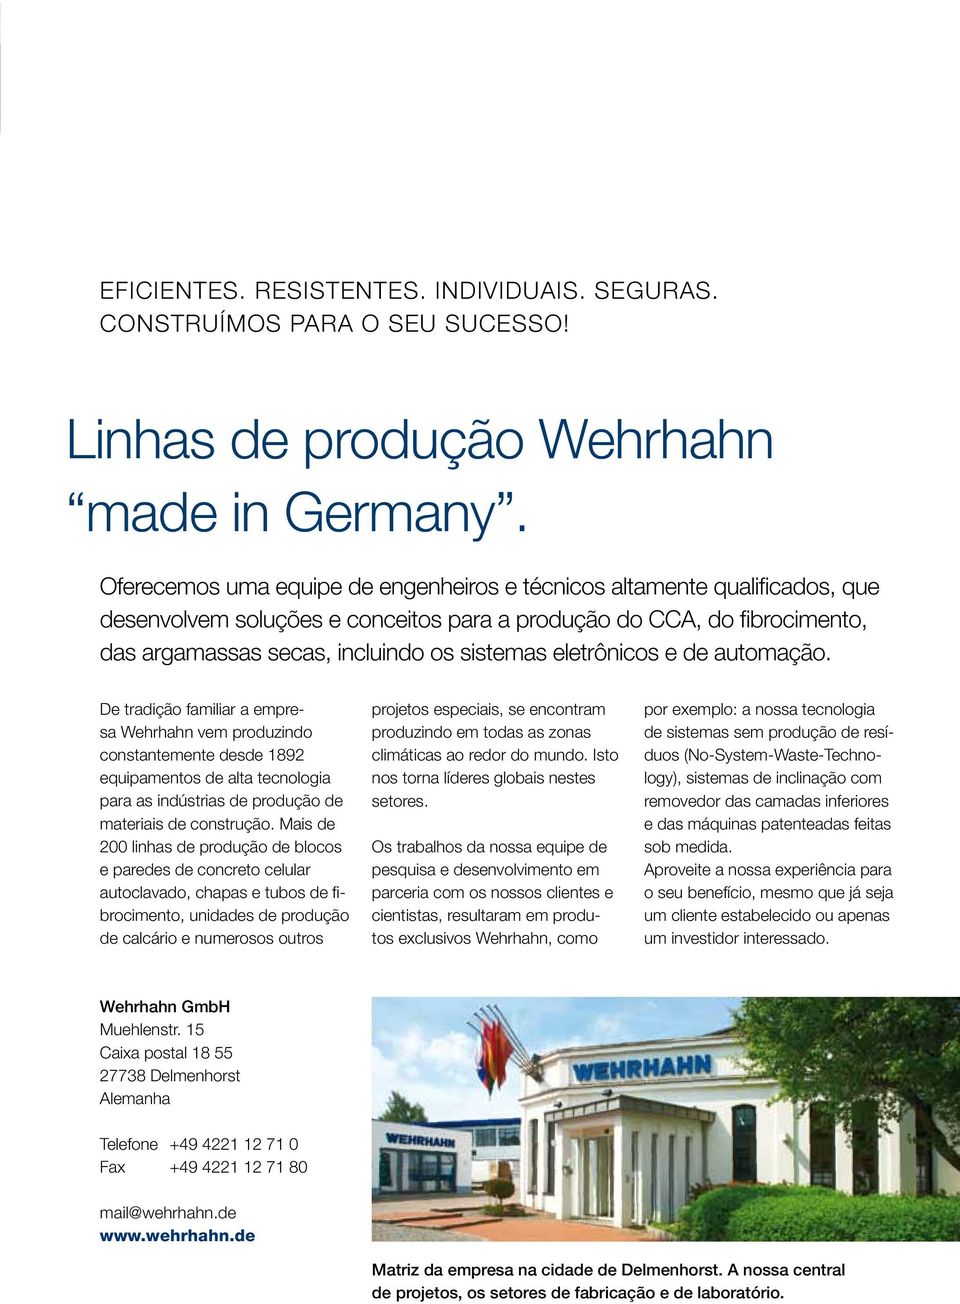 eletrônicos e de automação. De tradição familiar a empresa Wehrhahn vem produzindo constantemente desde 1892 equipamentos de alta tecnologia para as indústrias de produção de materiais de construção.